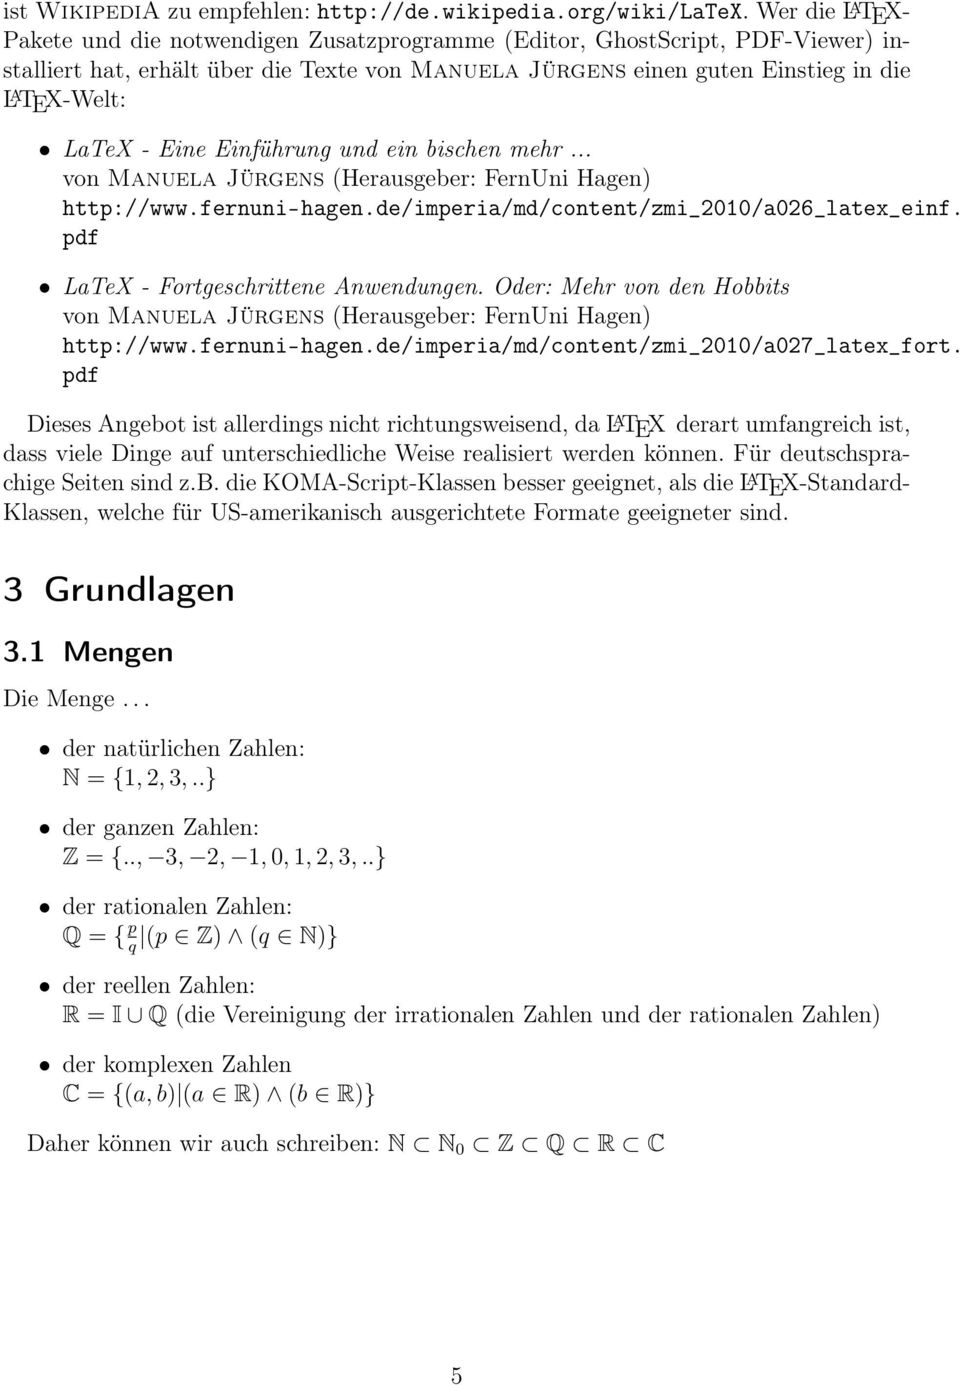 LaTeX - Eine Einführung und ein bischen mehr... von Manuela Jürgens (Herausgeber: FernUni Hagen) http://www.fernuni-hagen.de/imperia/md/content/zmi_21/a26_latex_einf.